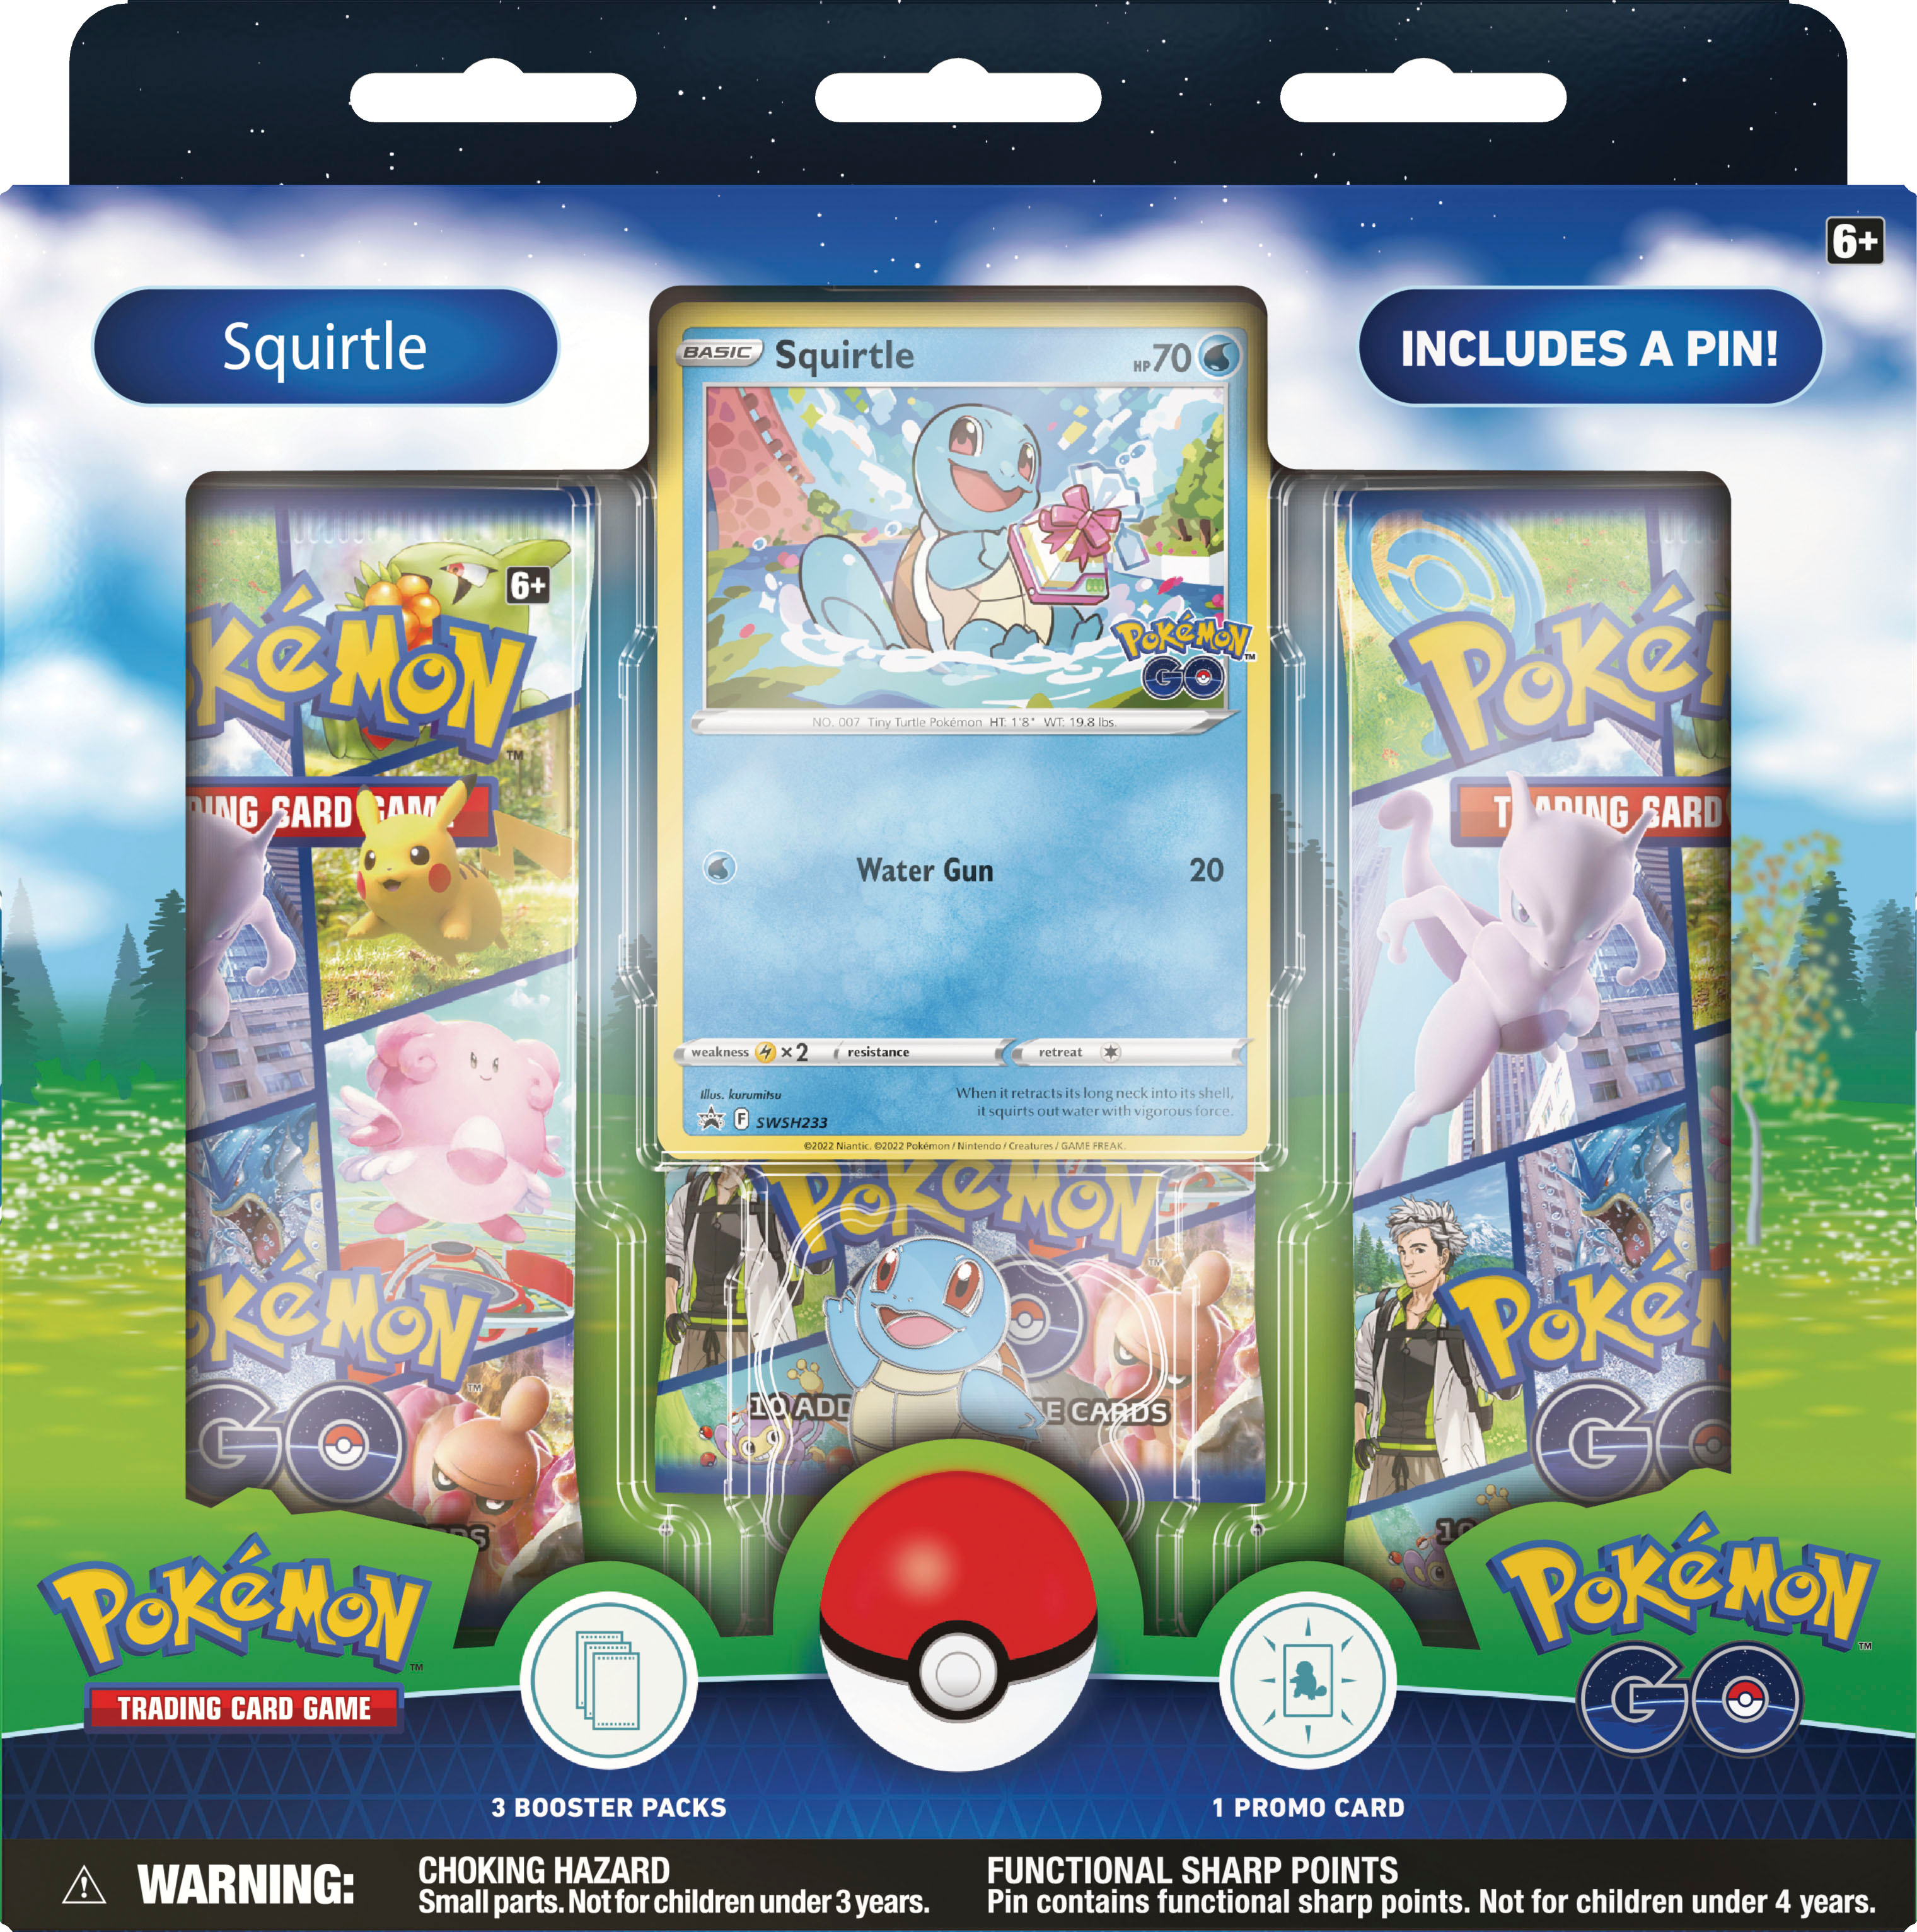 Cartões Pokémon Online baratos - Pokemart.nl